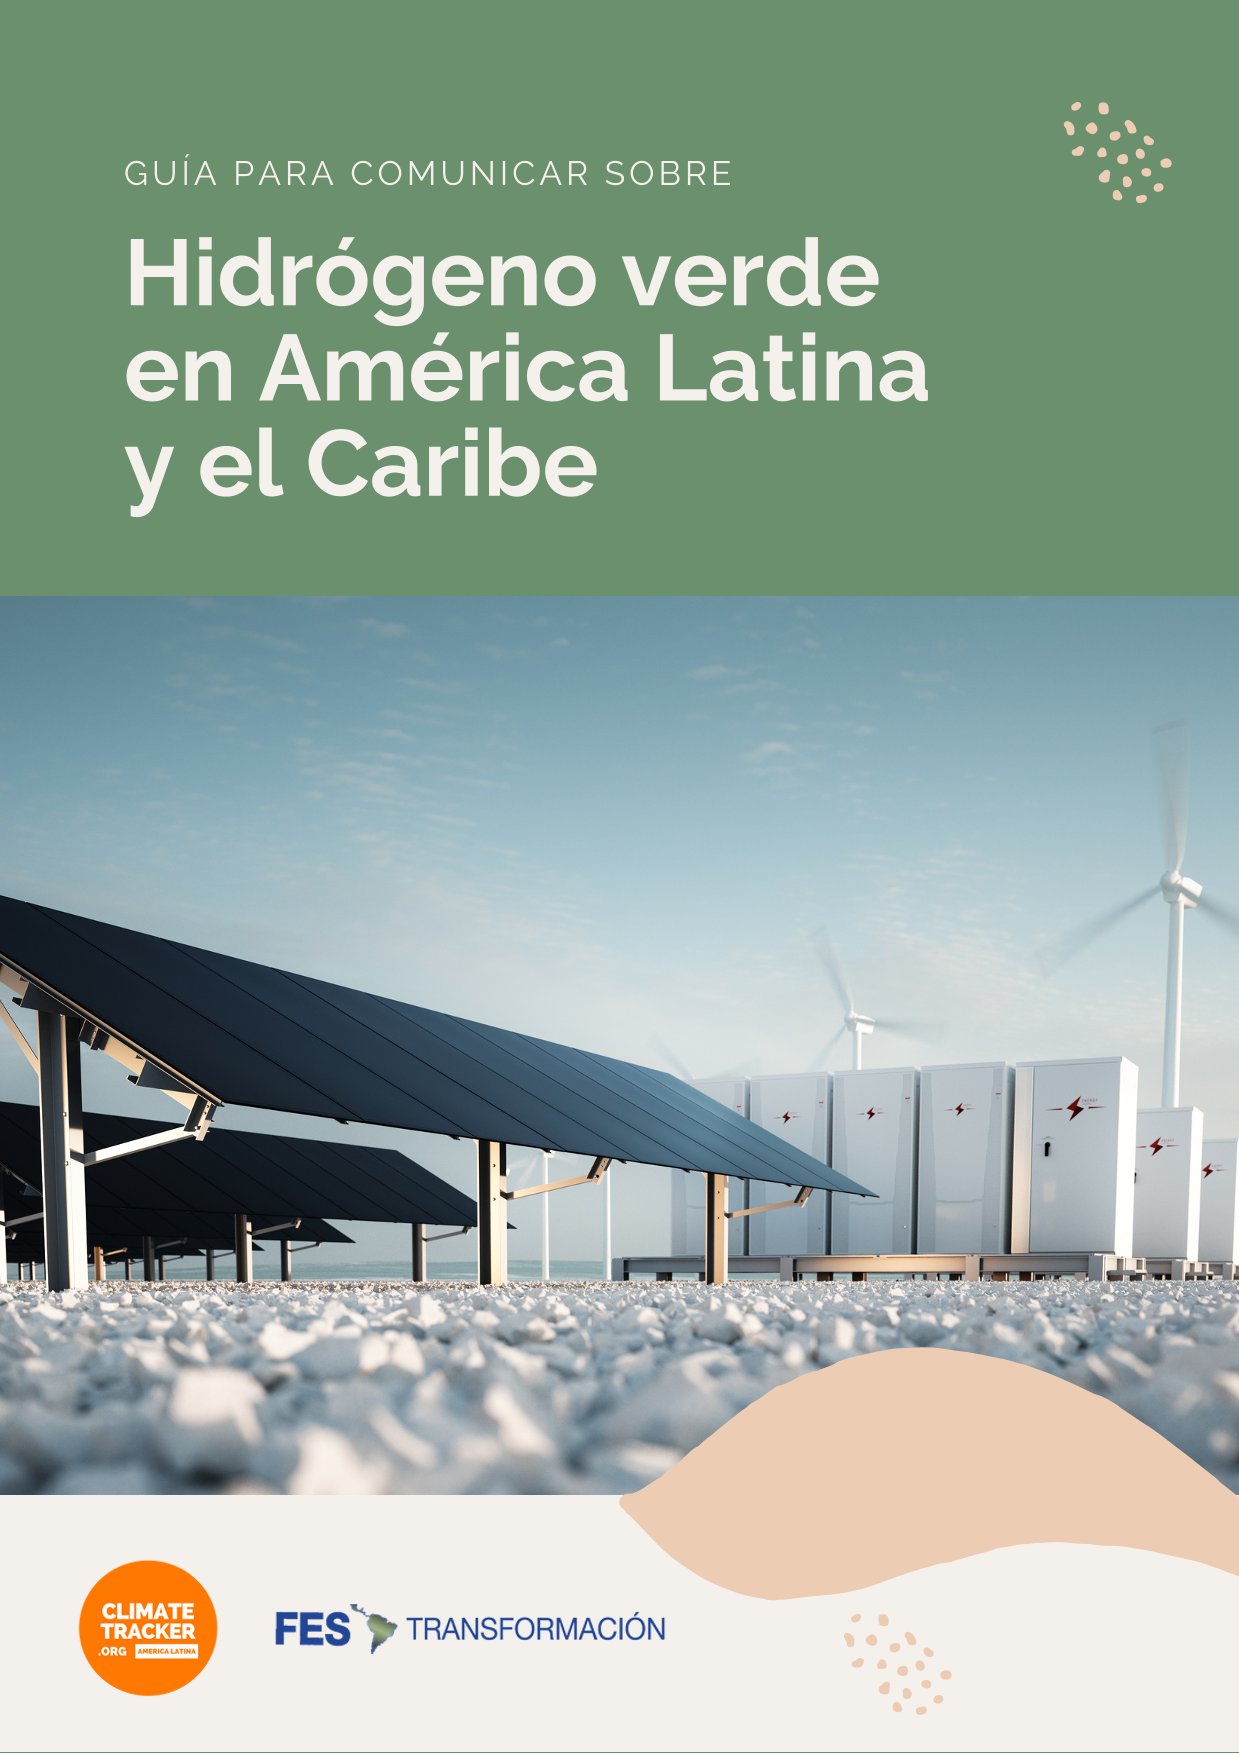 Guía para comunicar sobre Hidrógeno Verde (H2V) en América Latina